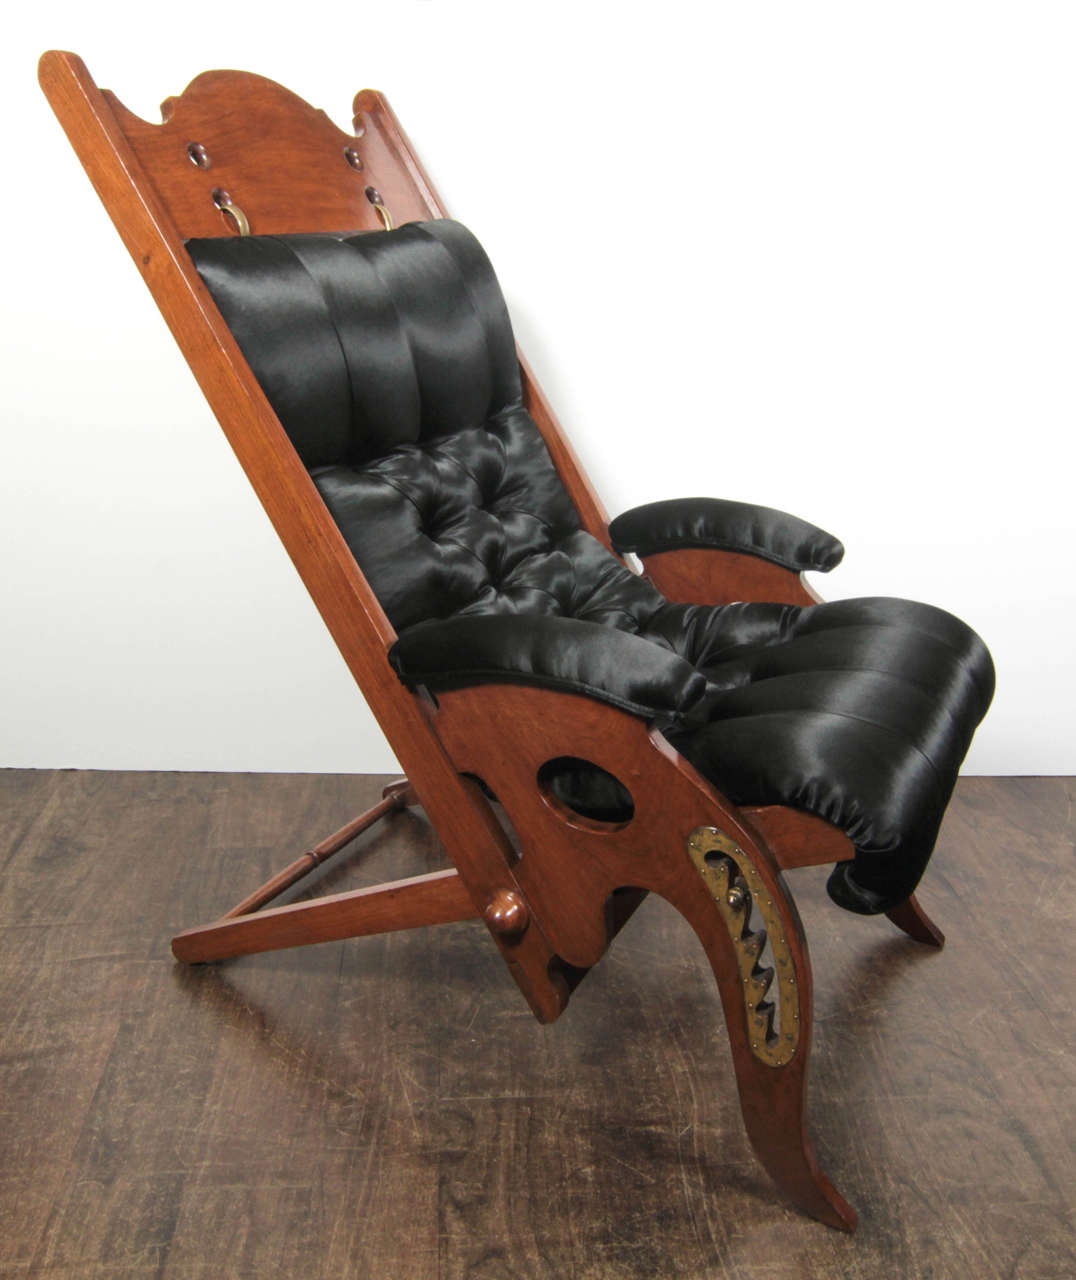 Une chaise longue de style édouardien pour un yacht en acajou et laiton avec une tapisserie boutonnée. Cette chaise fait partie d'une série de chaises fabriquées en France pour le décorateur, créateur de meubles et antiquaire parisien Jean-Pierre